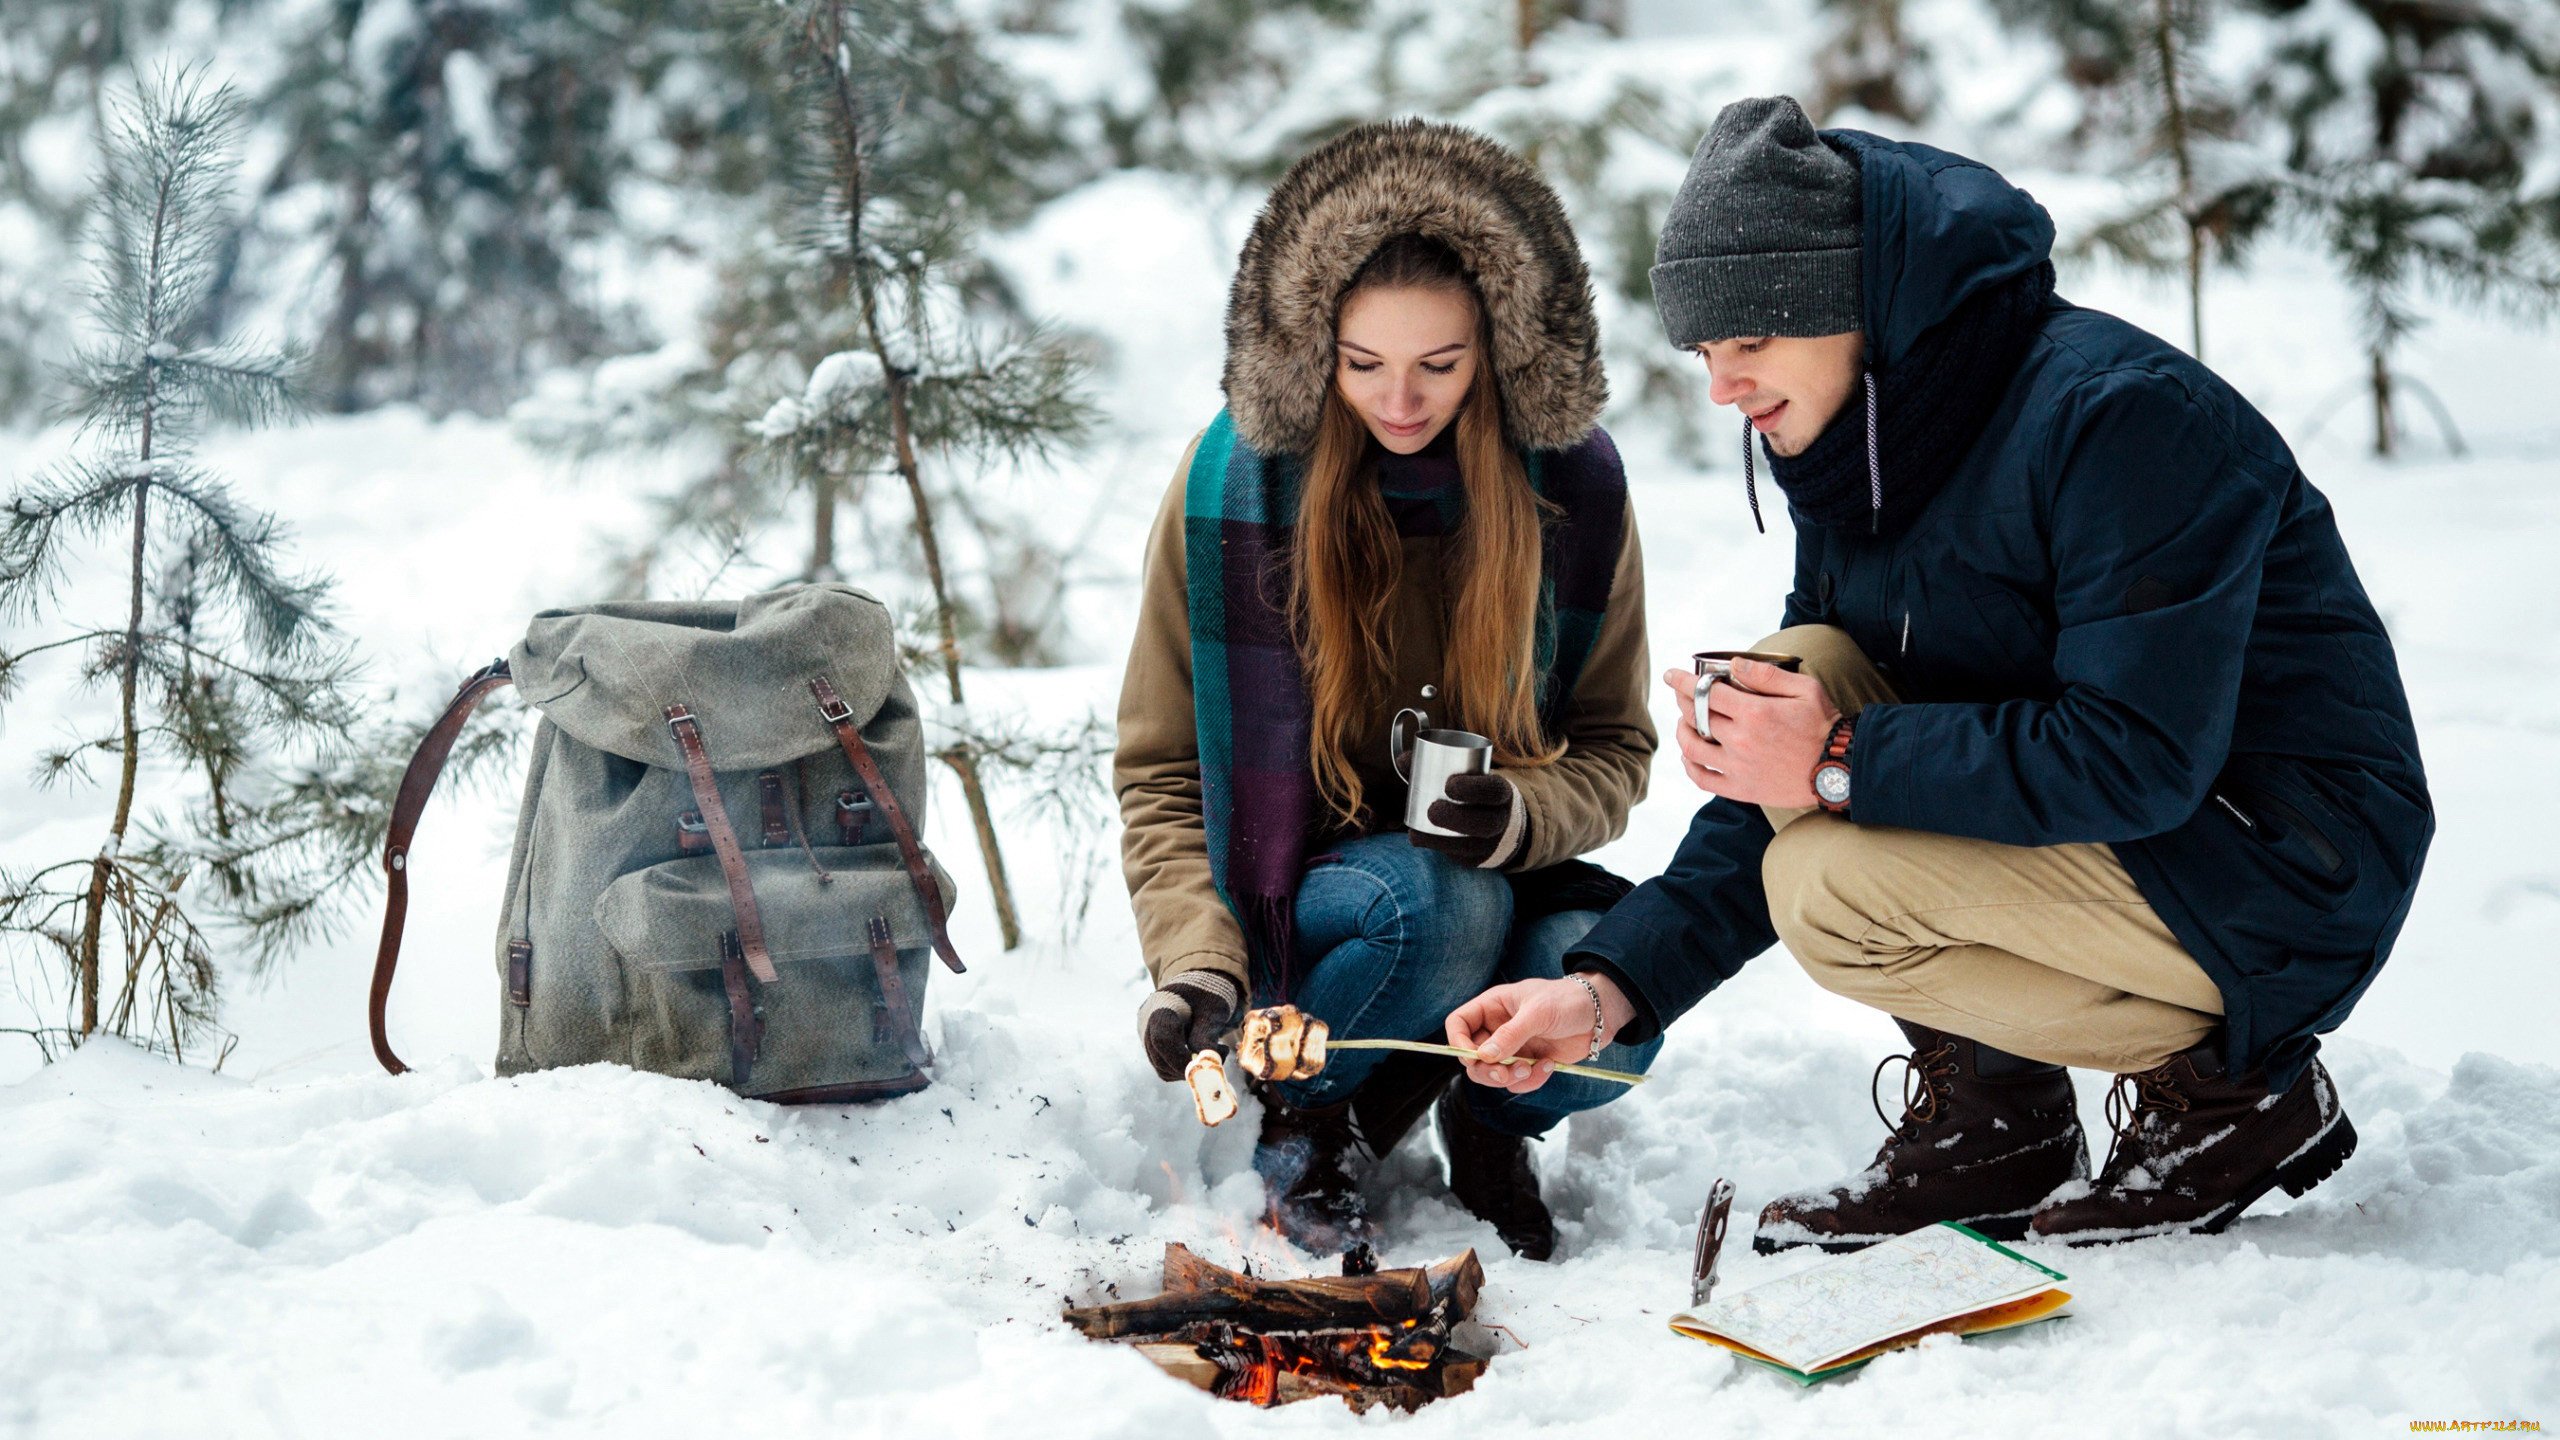 Едим на свежем воздухе. Пикник зимой на природе. Поход зимой в лес. Люди зимой. Зимняя фотосессия на природе.